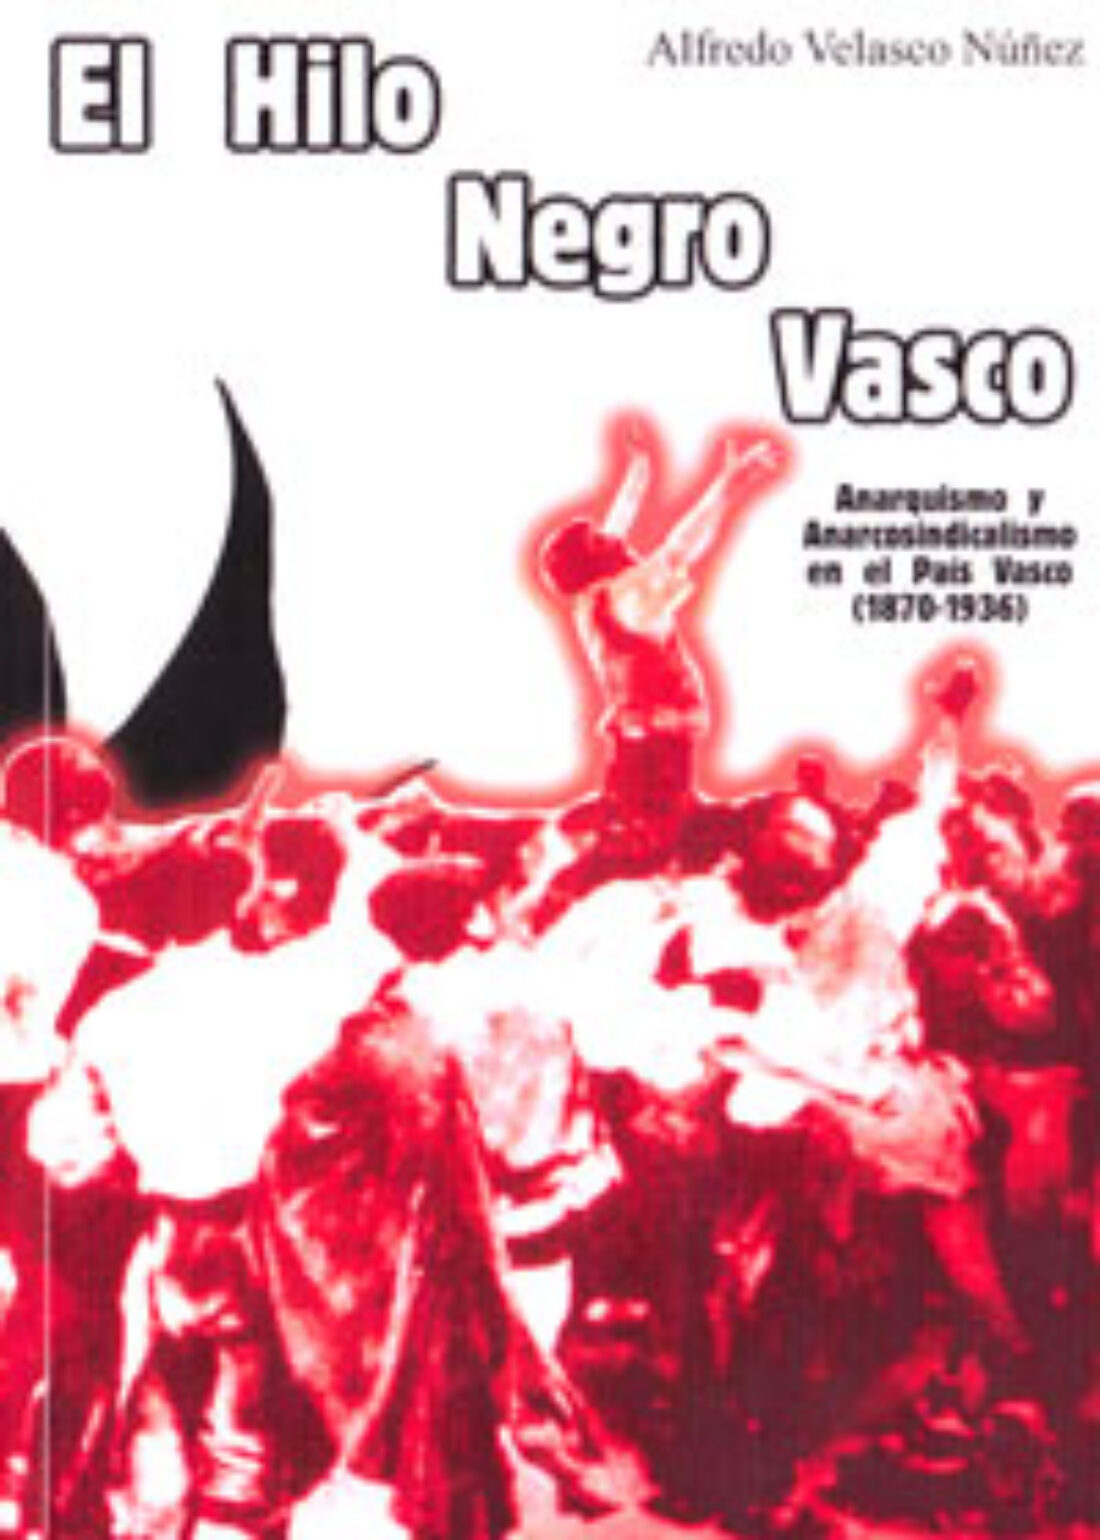 [Madrid, LaMalatesta] Viernes 5 de junio. El hilo negro vasco. Anarquismo y anarcosindicalismo en el País Vasco (1870-1936)